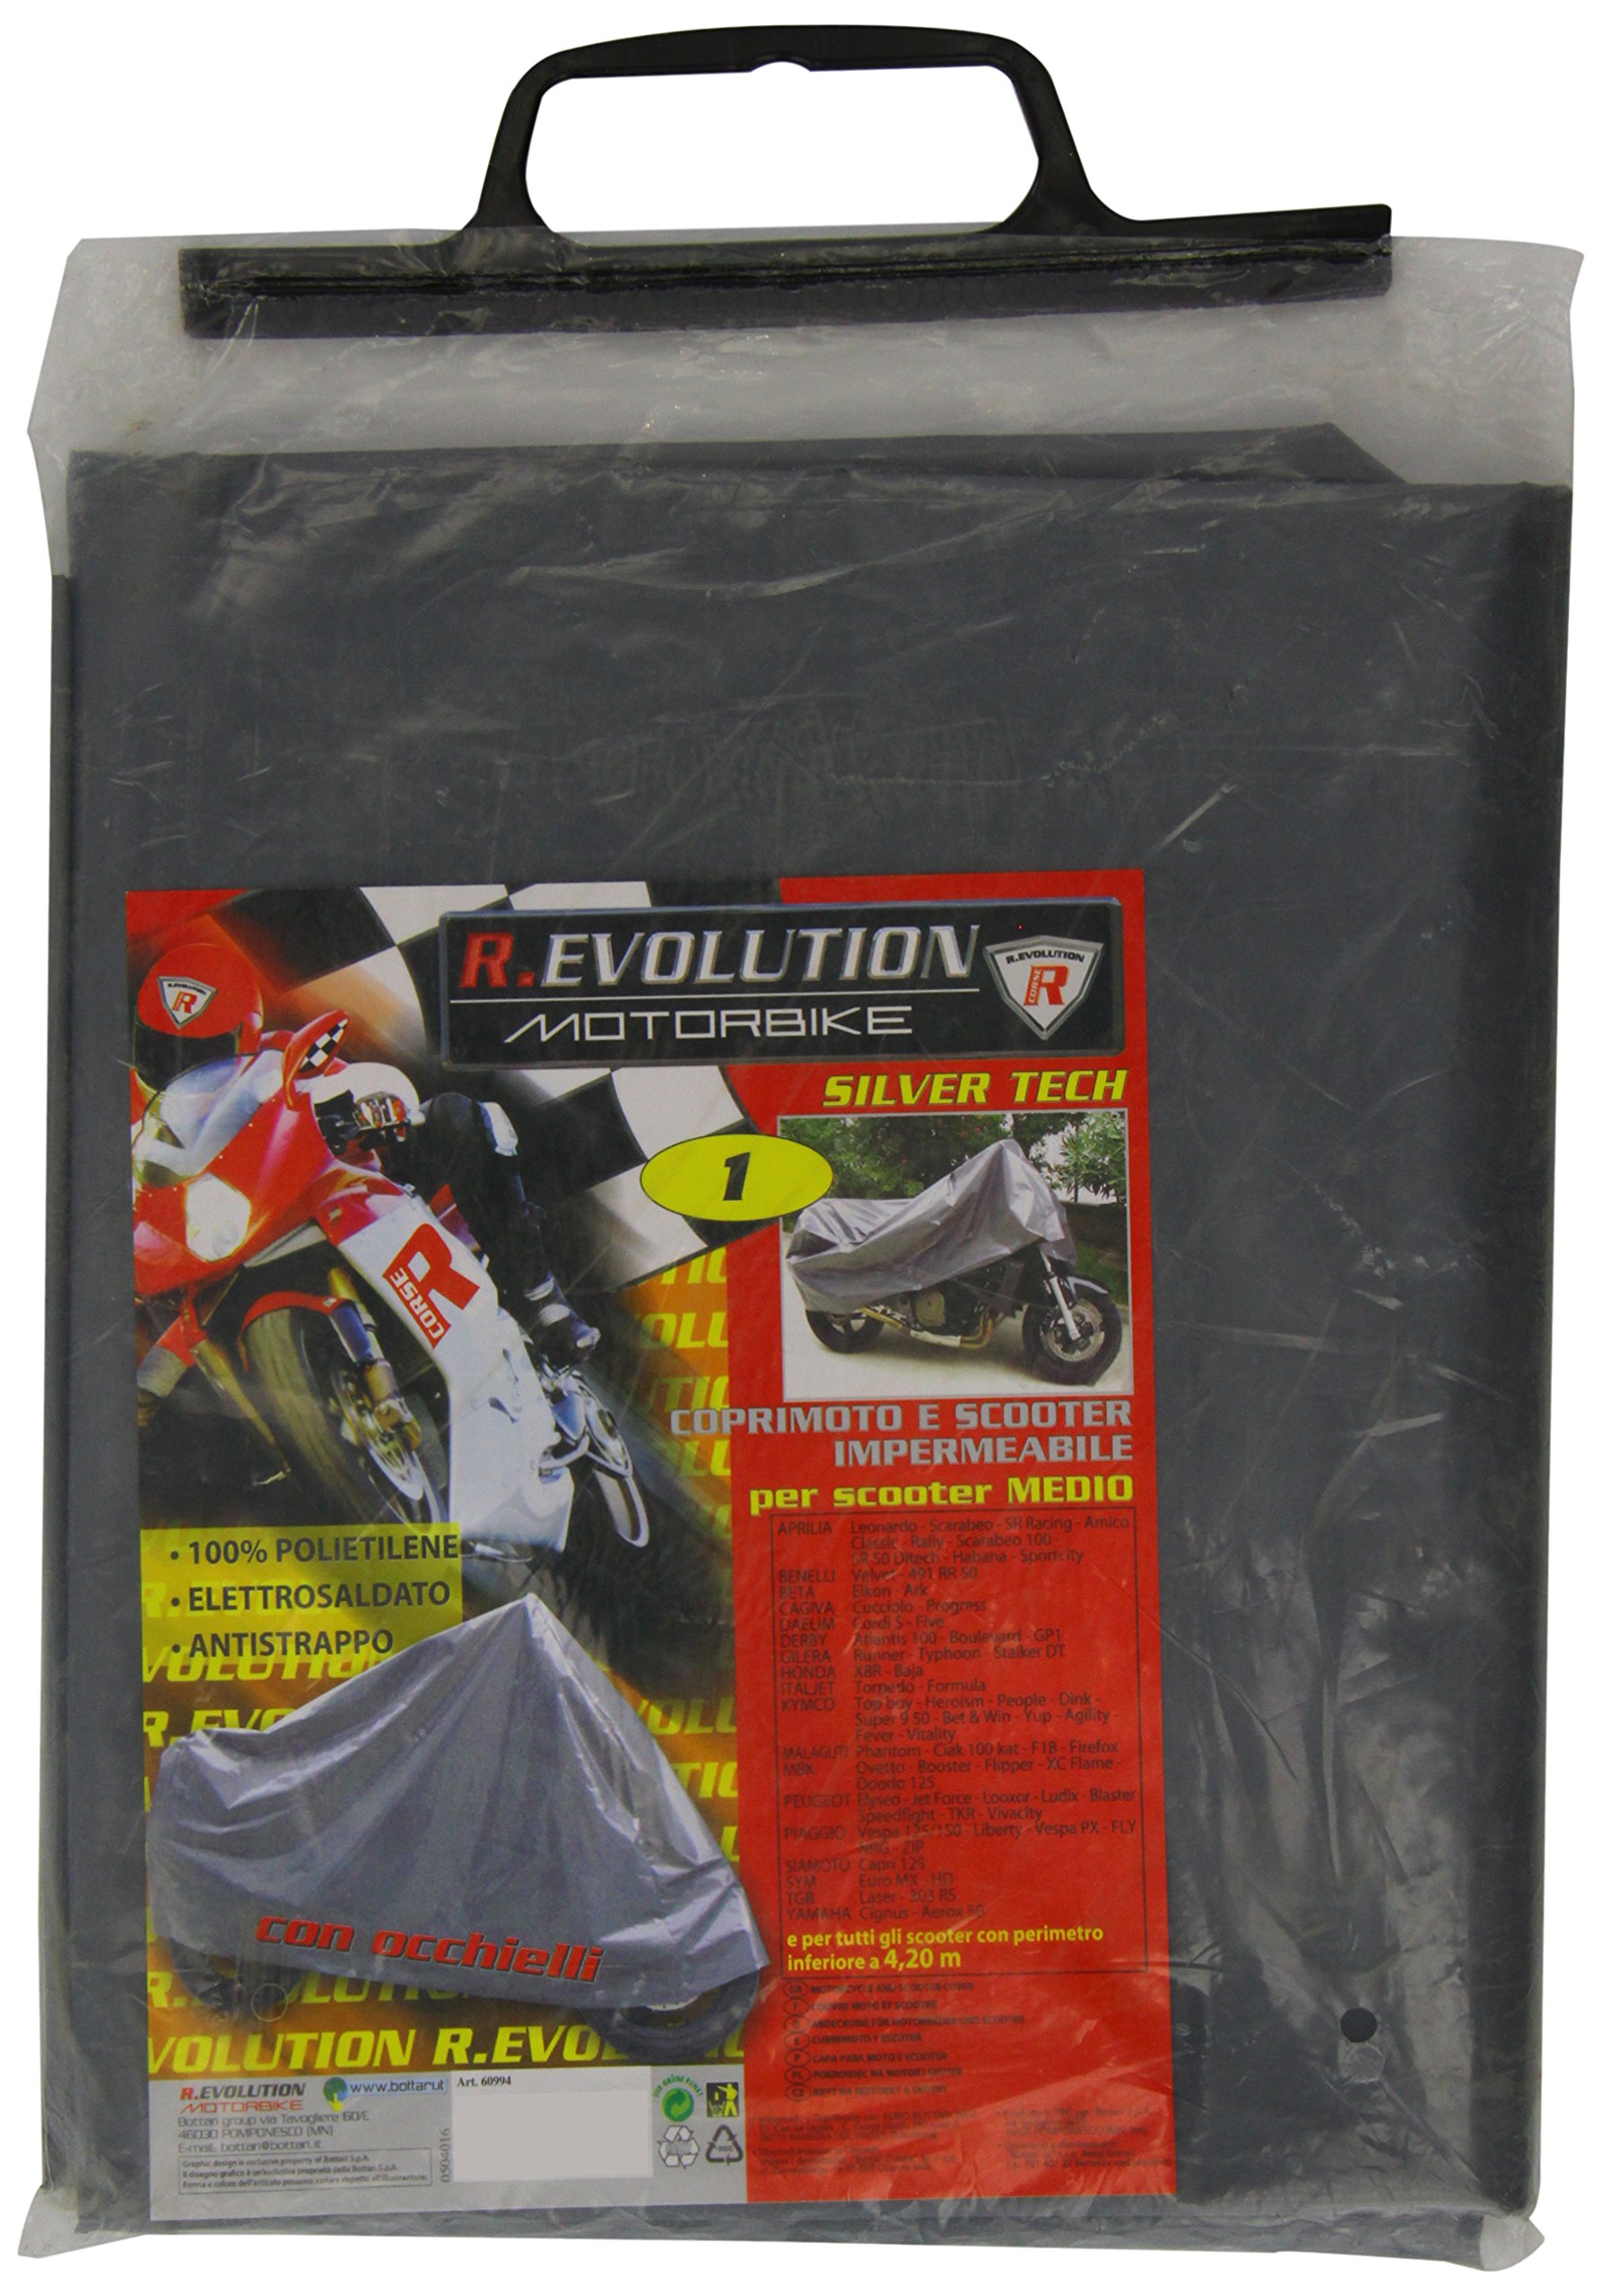 R. EVOLUTION Motorbike 60994-Tech Motorrad- und Roller von Bottari